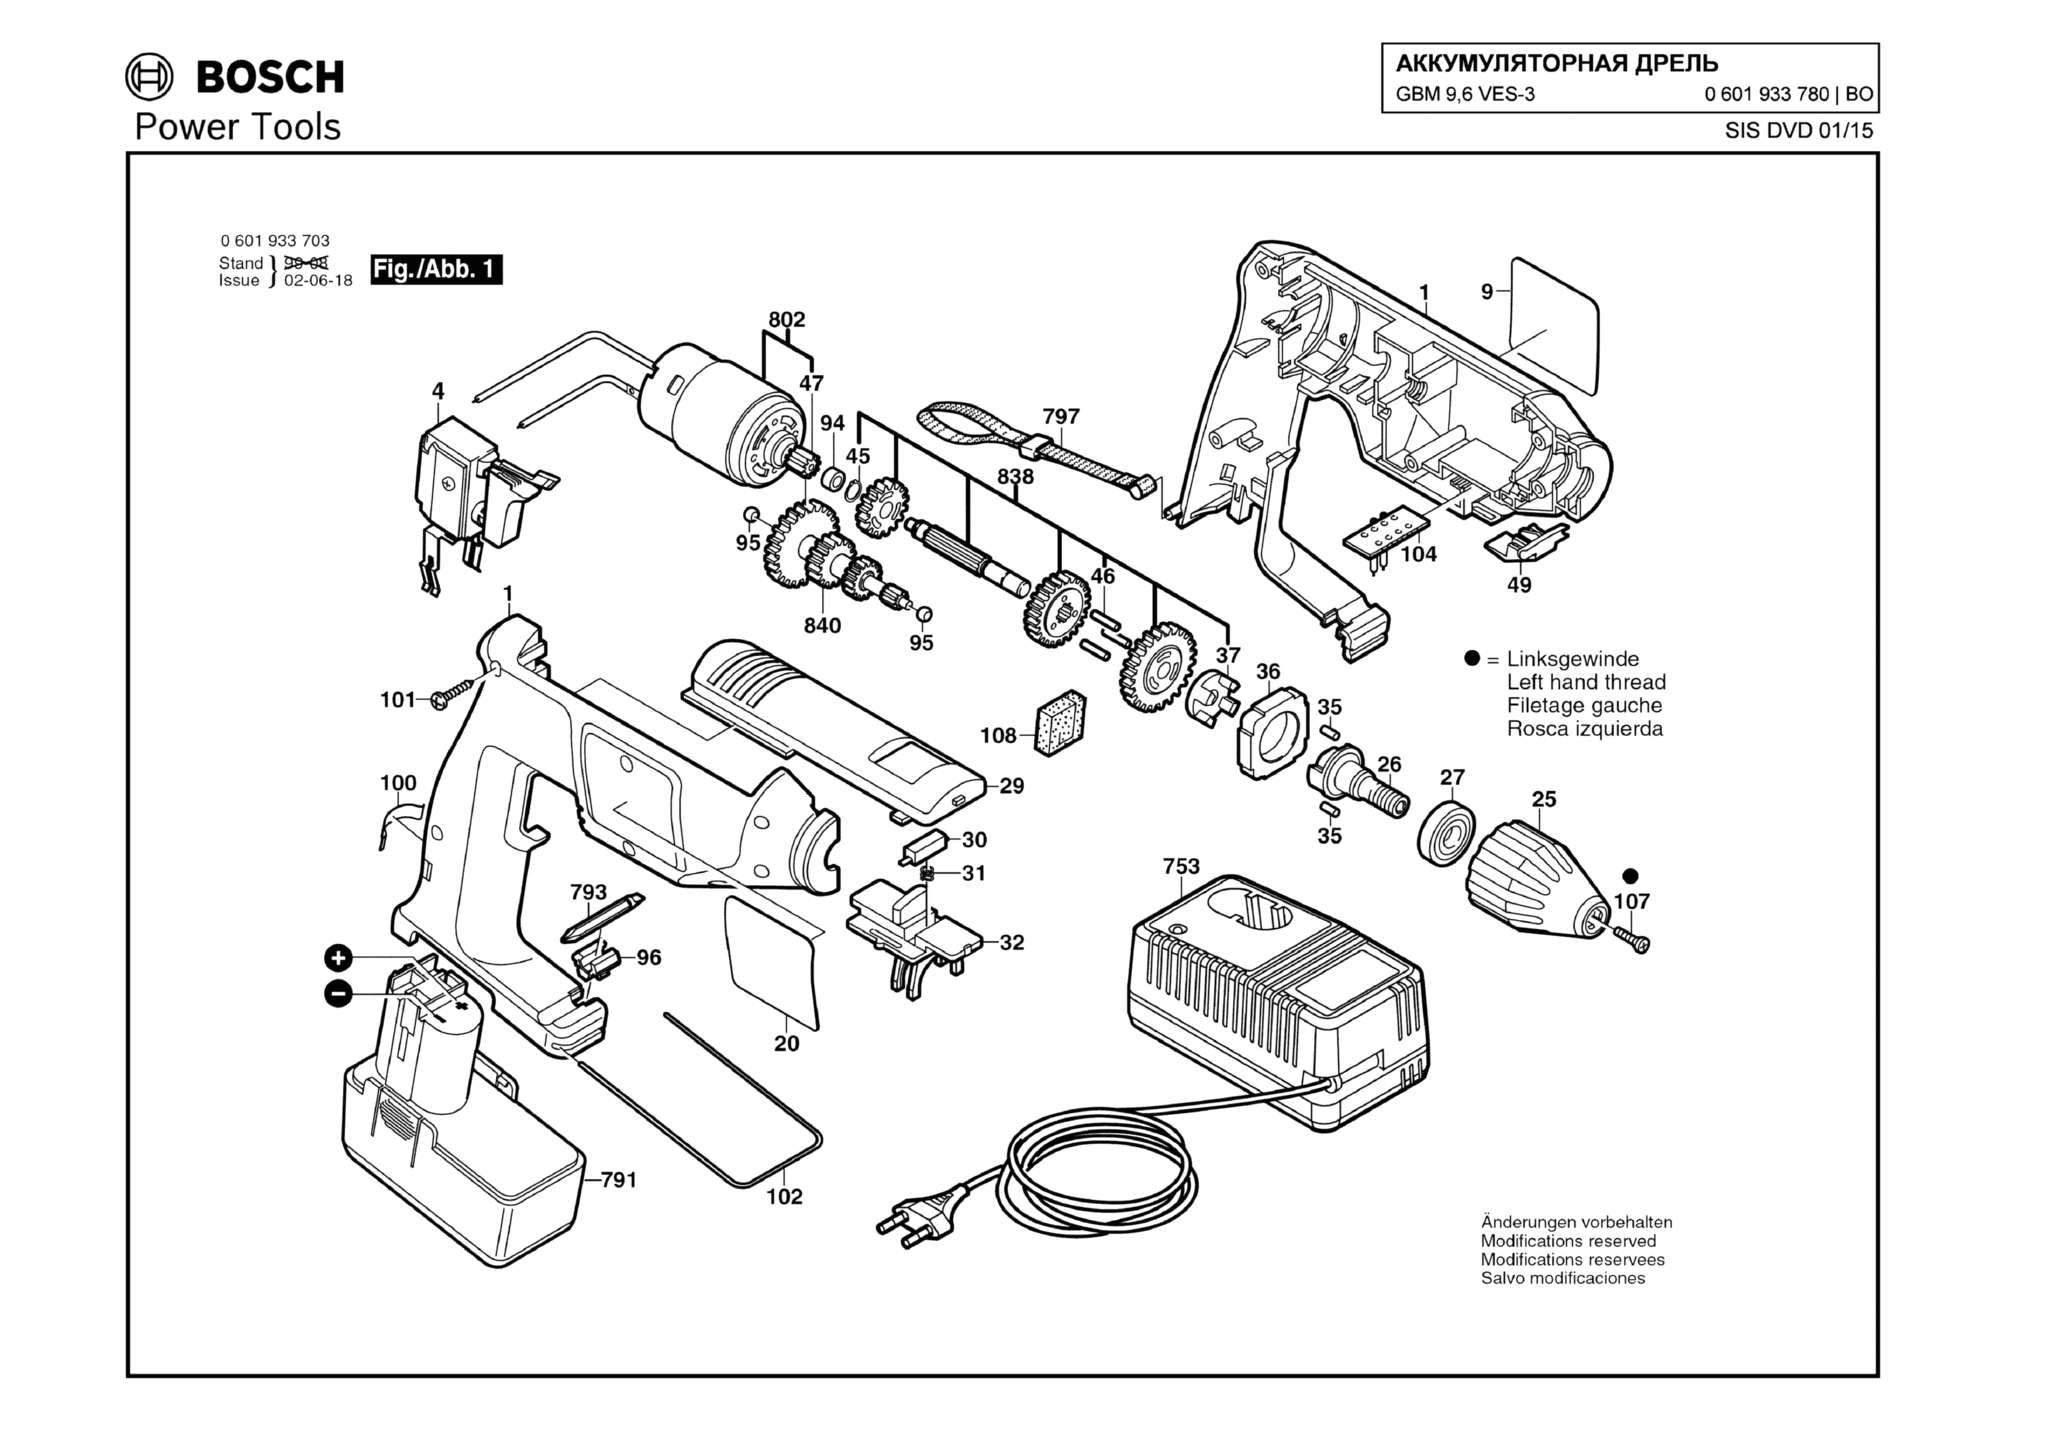 Запчасти, схема и деталировка Bosch GBM 9,6 VES-3 (ТИП 0601933780)